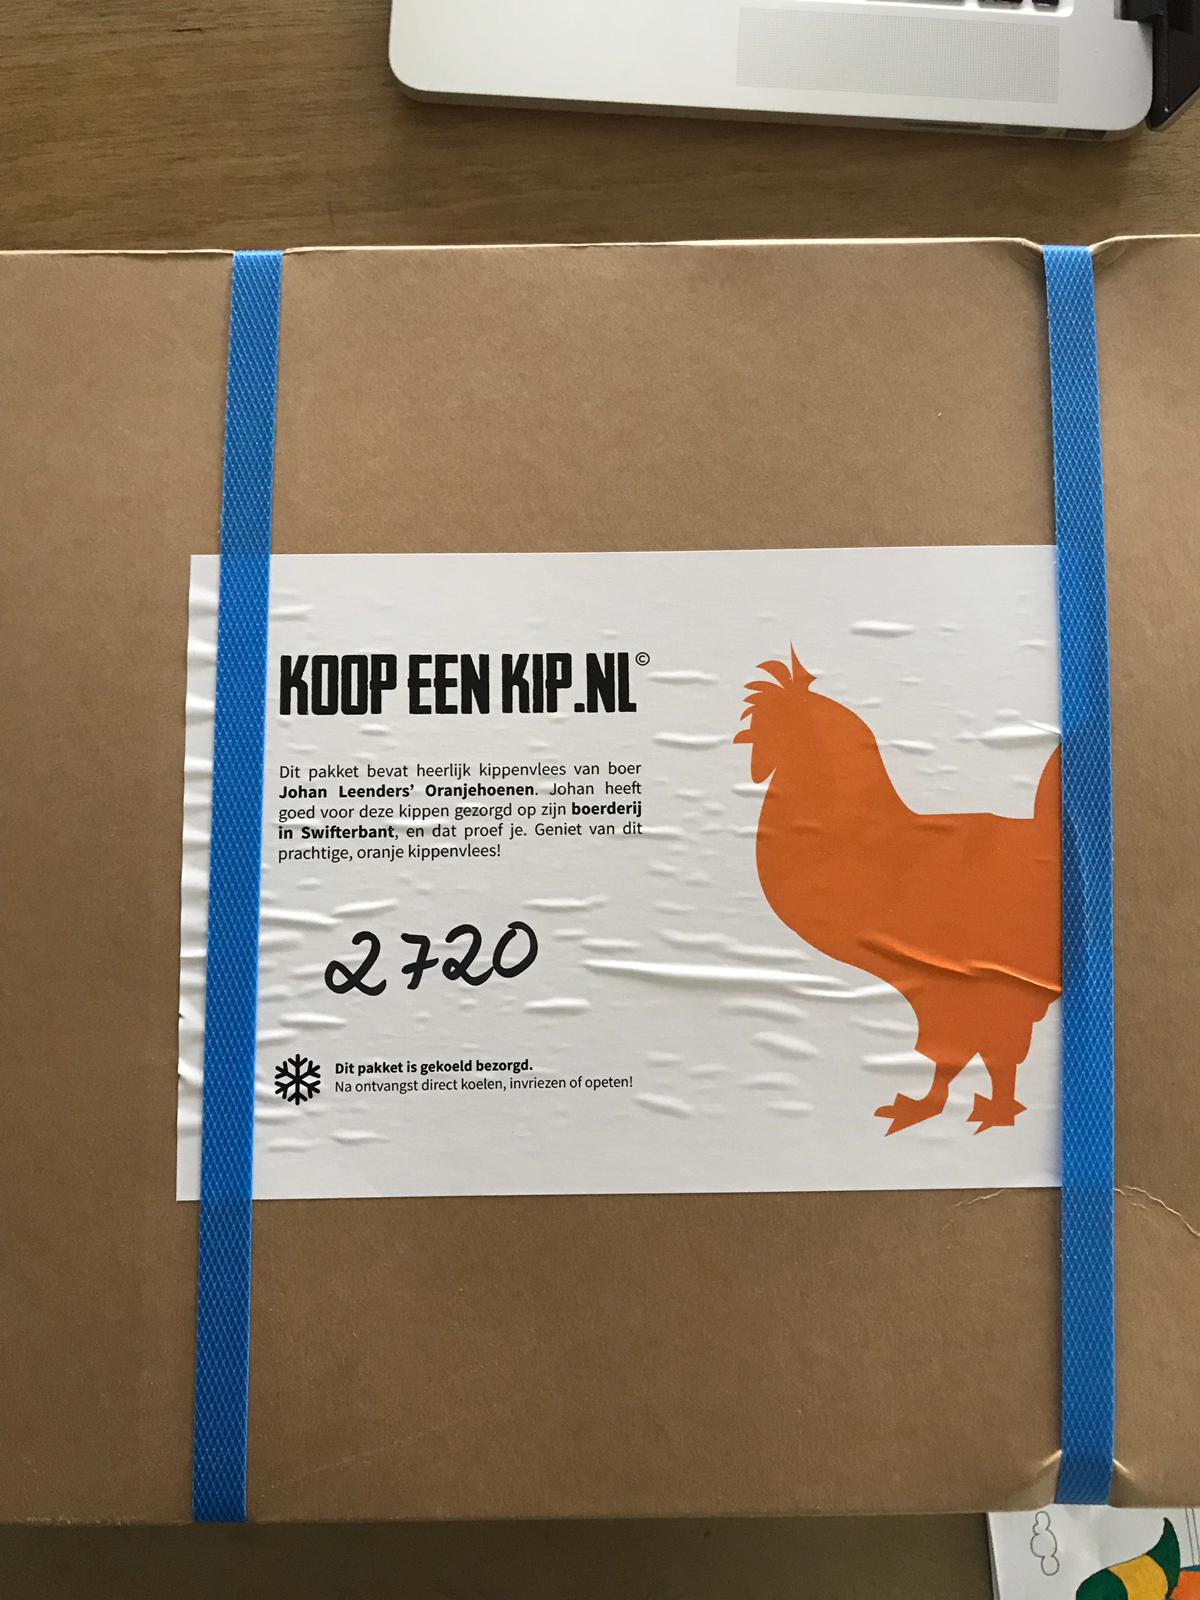 JohanLeenders 🚜 "Ha wat gaaf. De eigen #Oranjehoen weer terug via @KoopeenKipnl Ik vind mooi. https://t.co/N6C1X8GWja" / Twitter